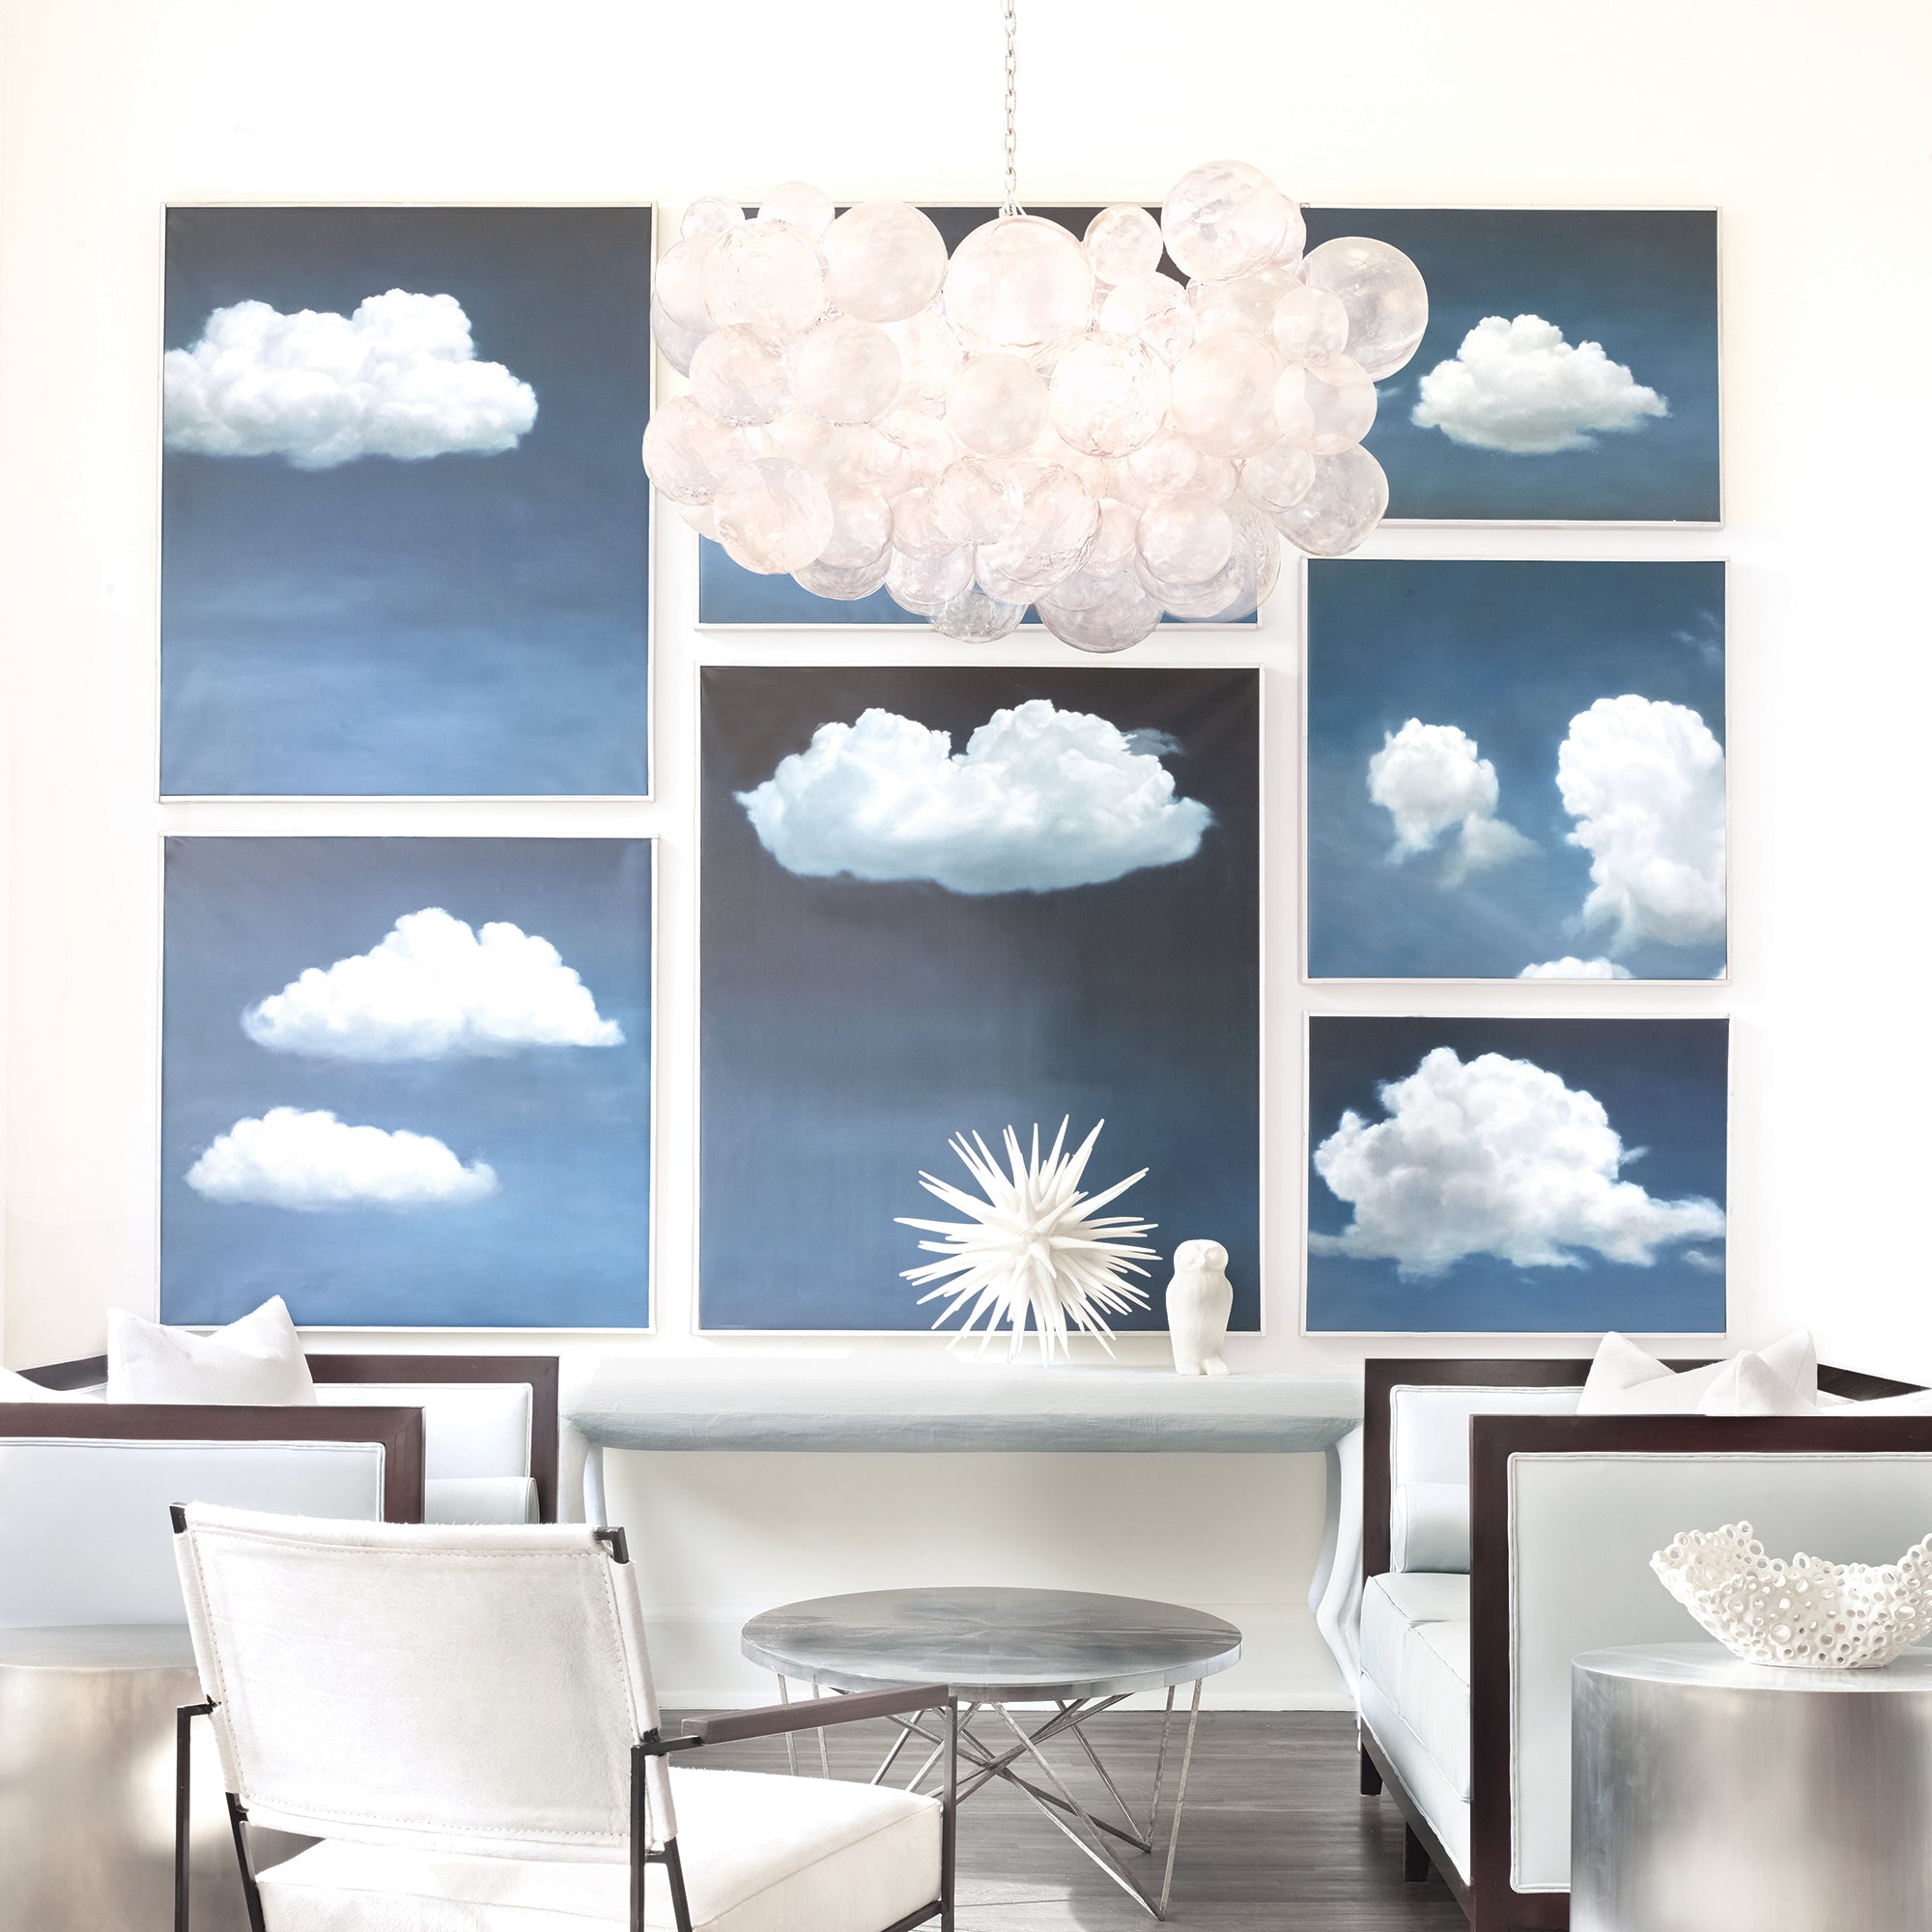 cloud chandelier featured in living room